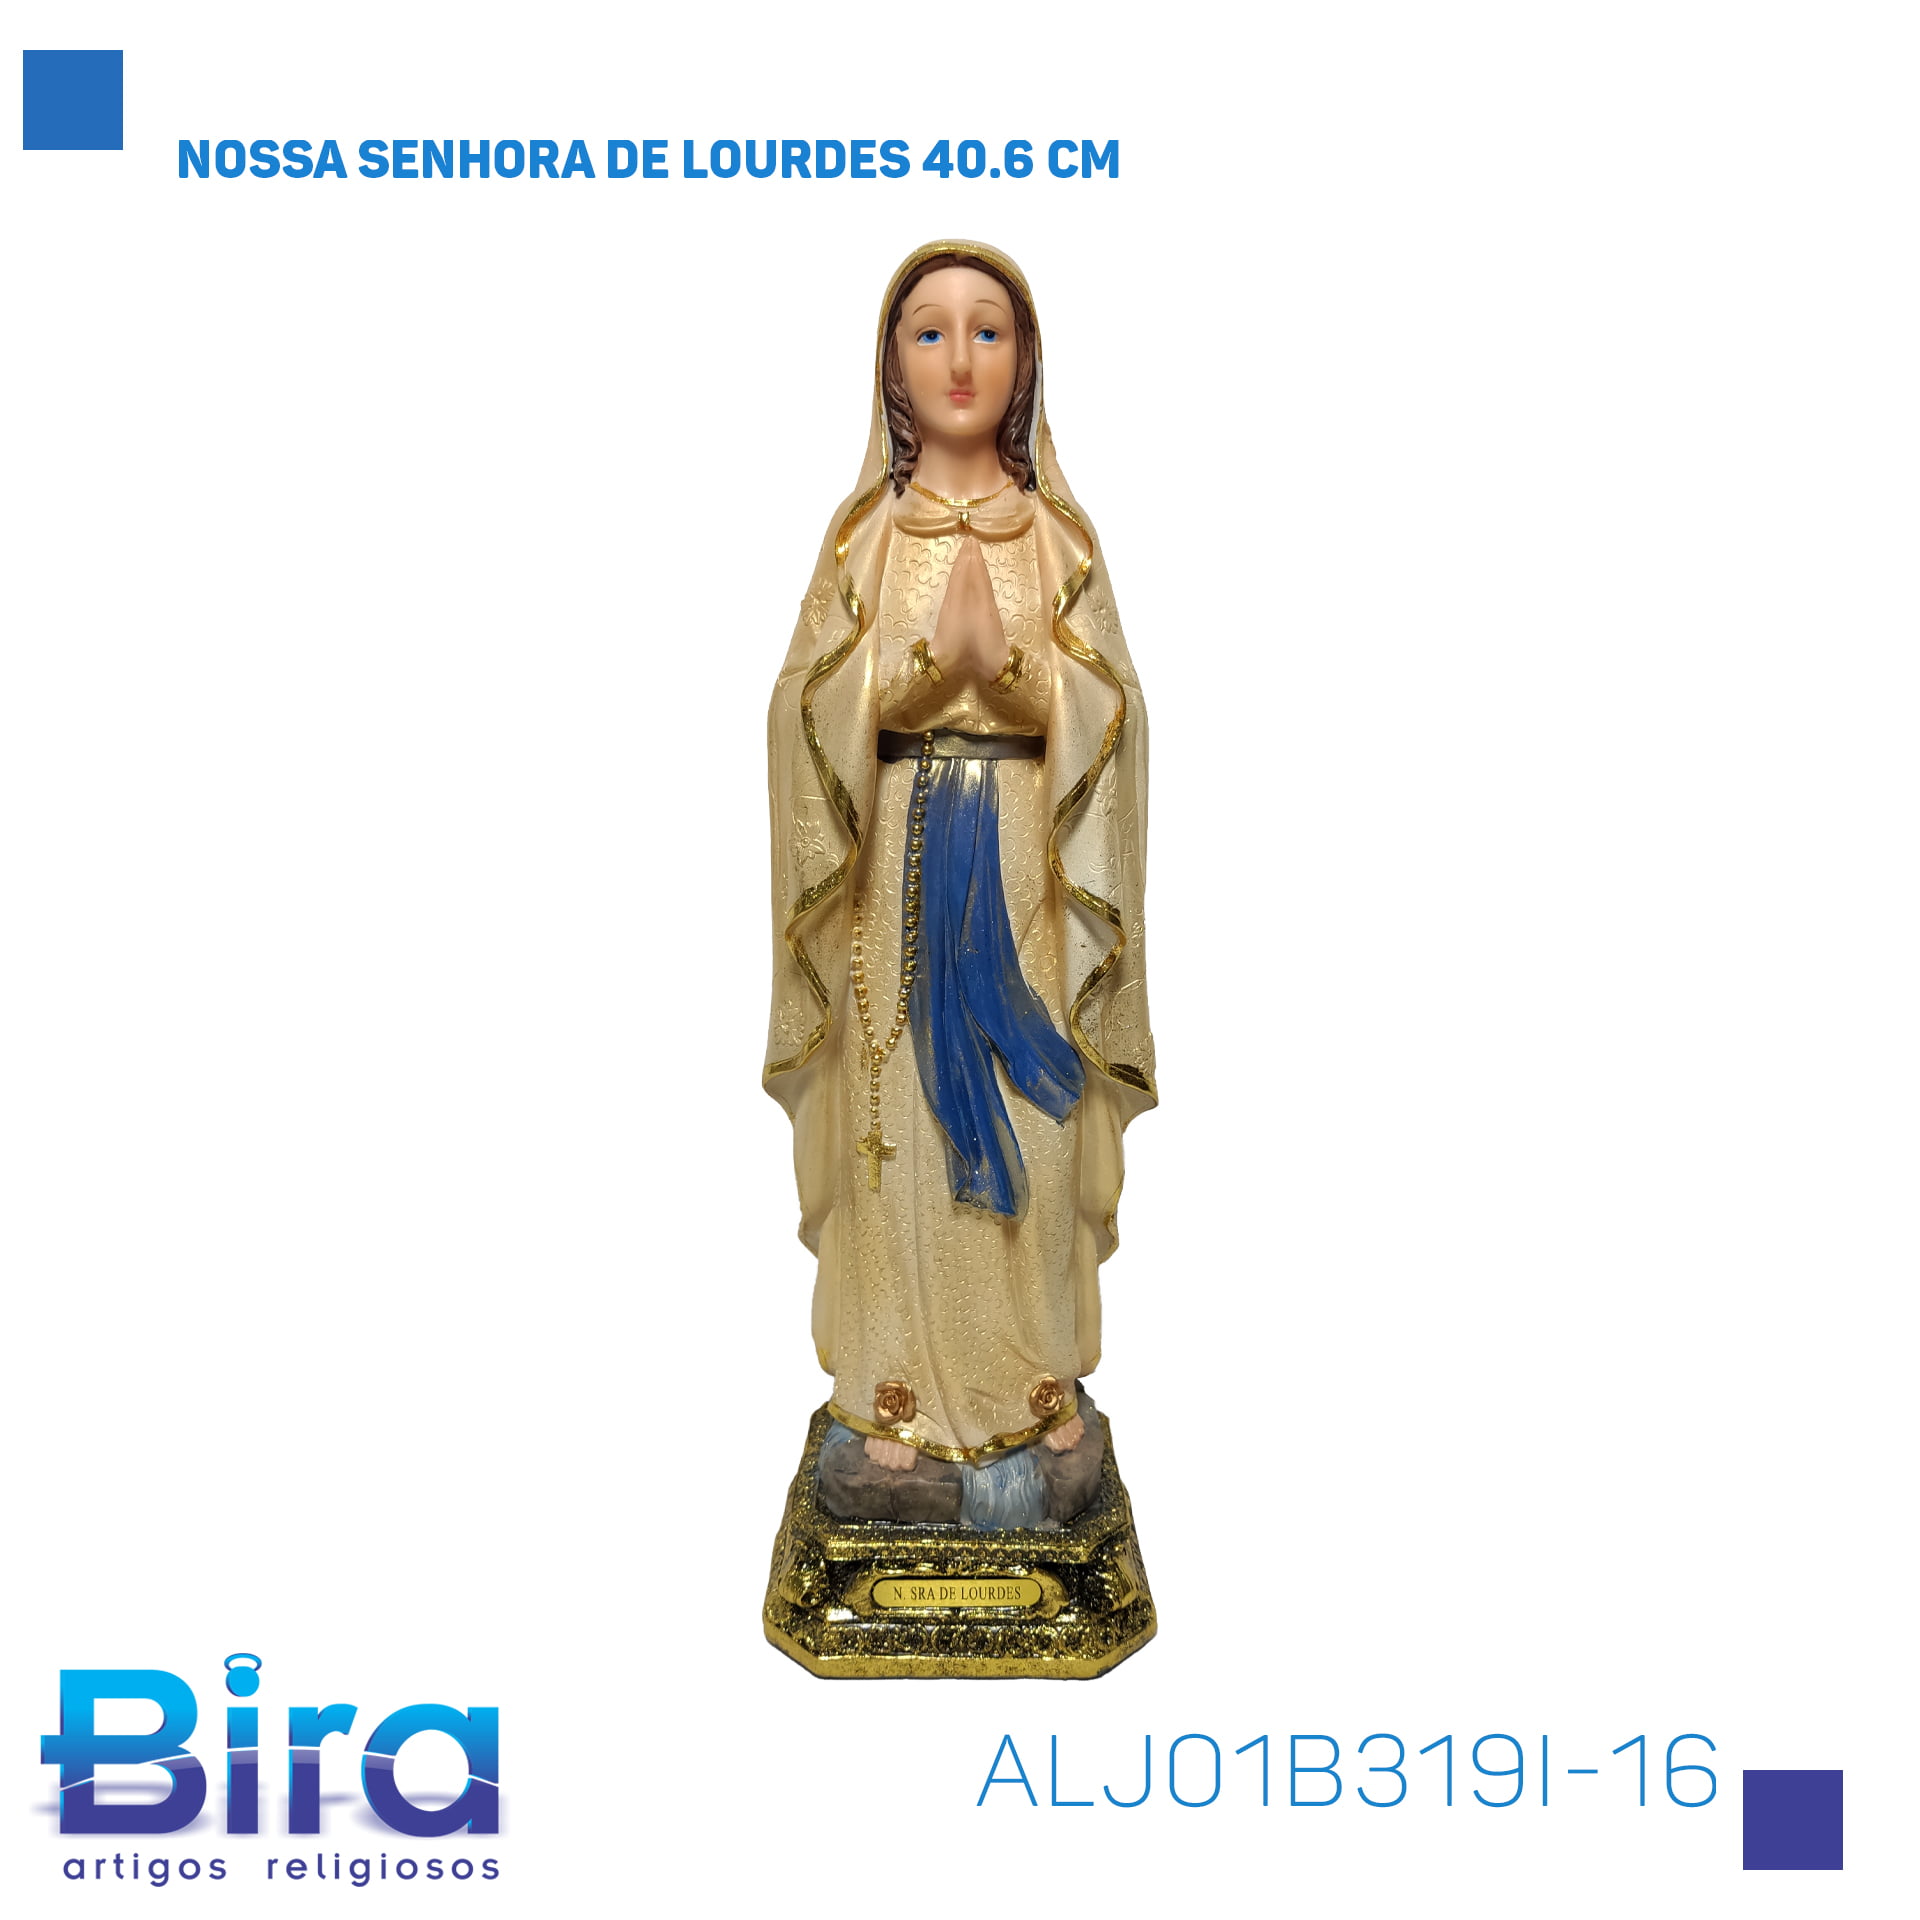 Bira Artigos Religiosos - NOSSA SENHORA DE LOURDES 40.6 CM Cód.: ALJ01B319I-16